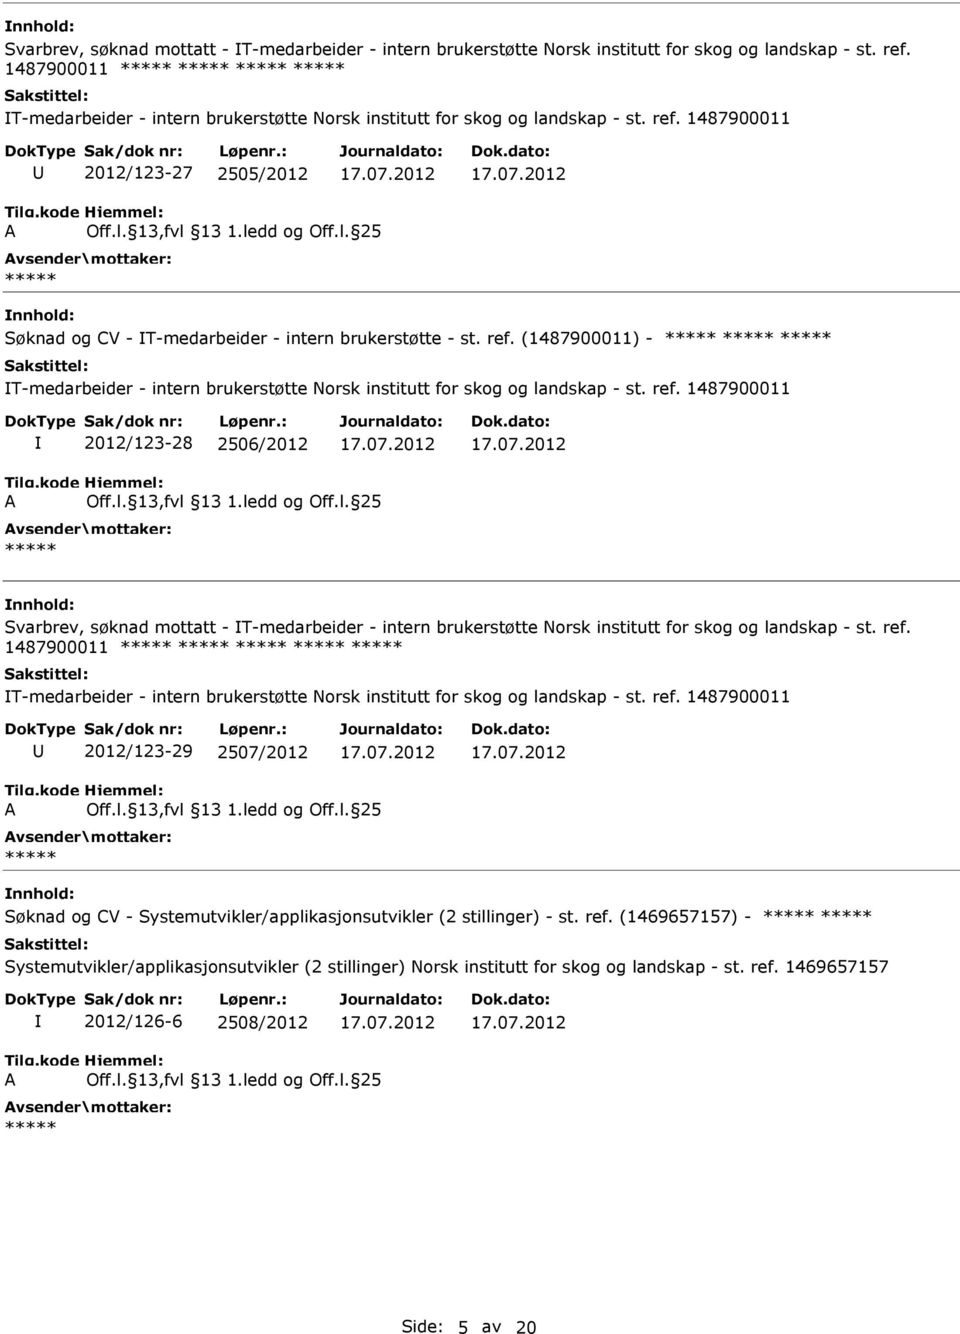 1487900011 2012/123-29 2507/2012 Søknad og CV - Systemutvikler/applikasjonsutvikler (2 stillinger) - st. ref. (1469657157) - 2012/126-6 2508/2012 Side: 5 av 20